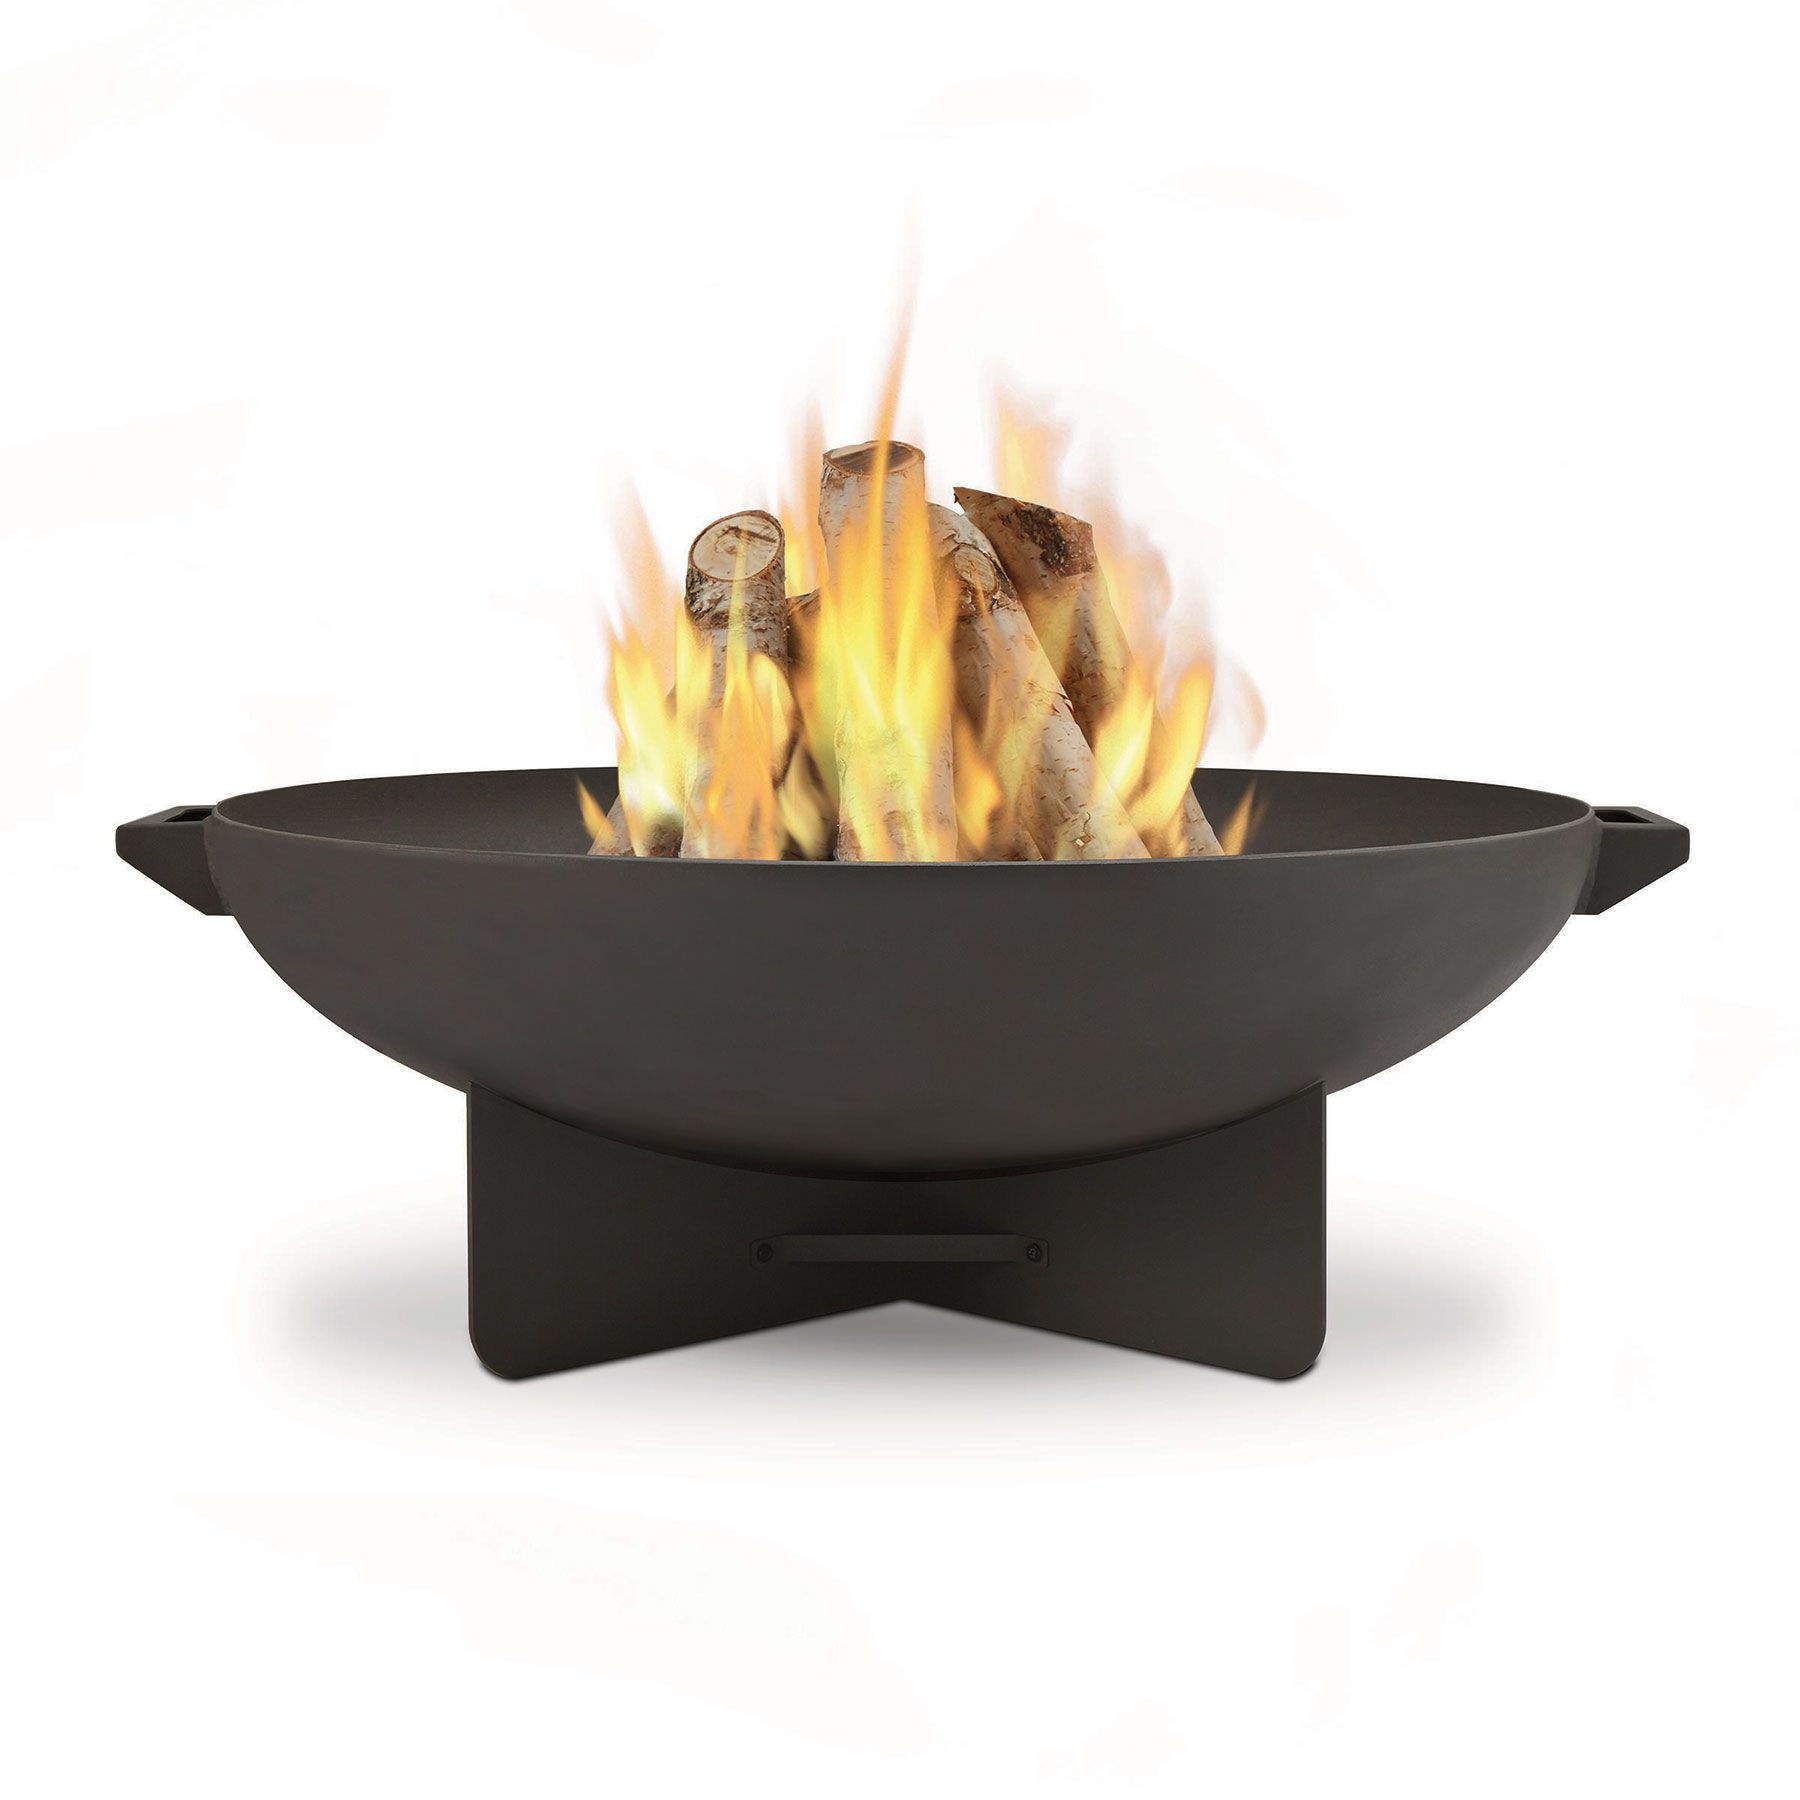 Најбоље противпожарне јаме: Челична ватрогасна посуда од стварног пламена Ансон која гори дрвом